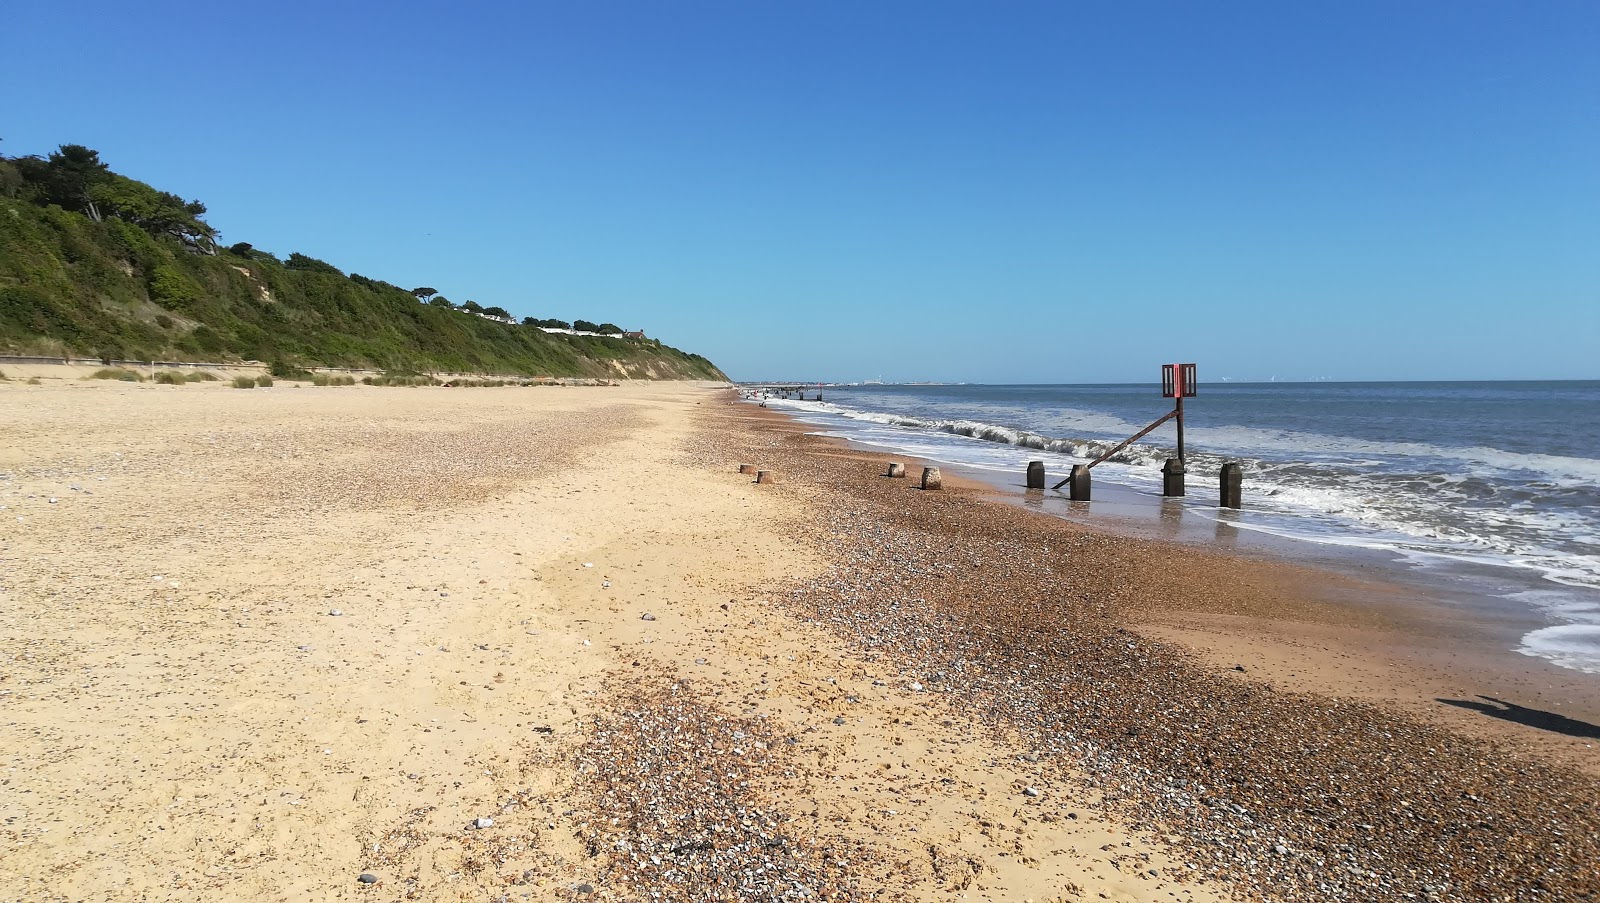 Fotografie cu Corton beach cu o suprafață de nisip strălucitor